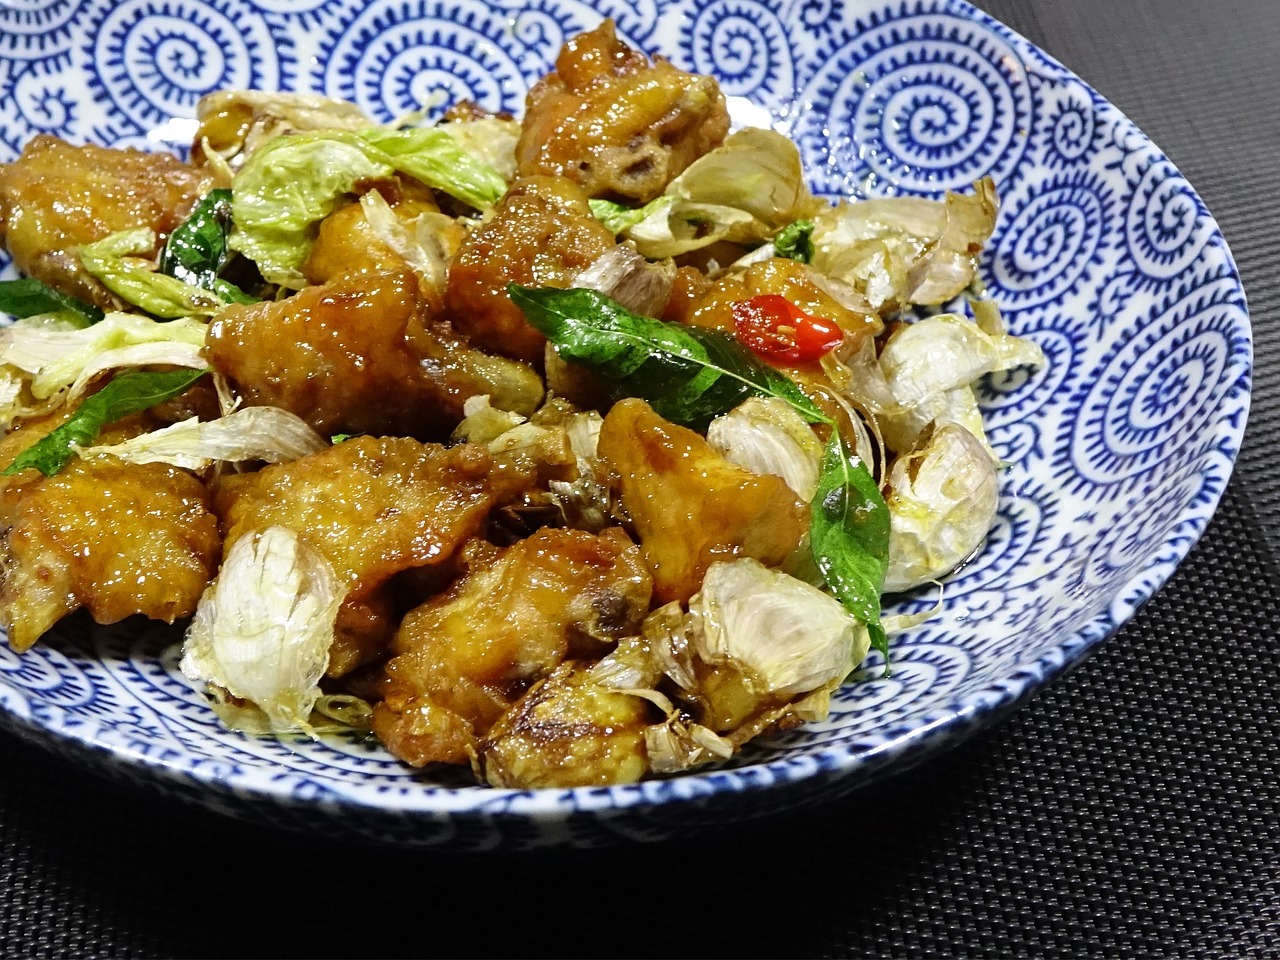 Dak-bokkeum - Stir-fried Chicken